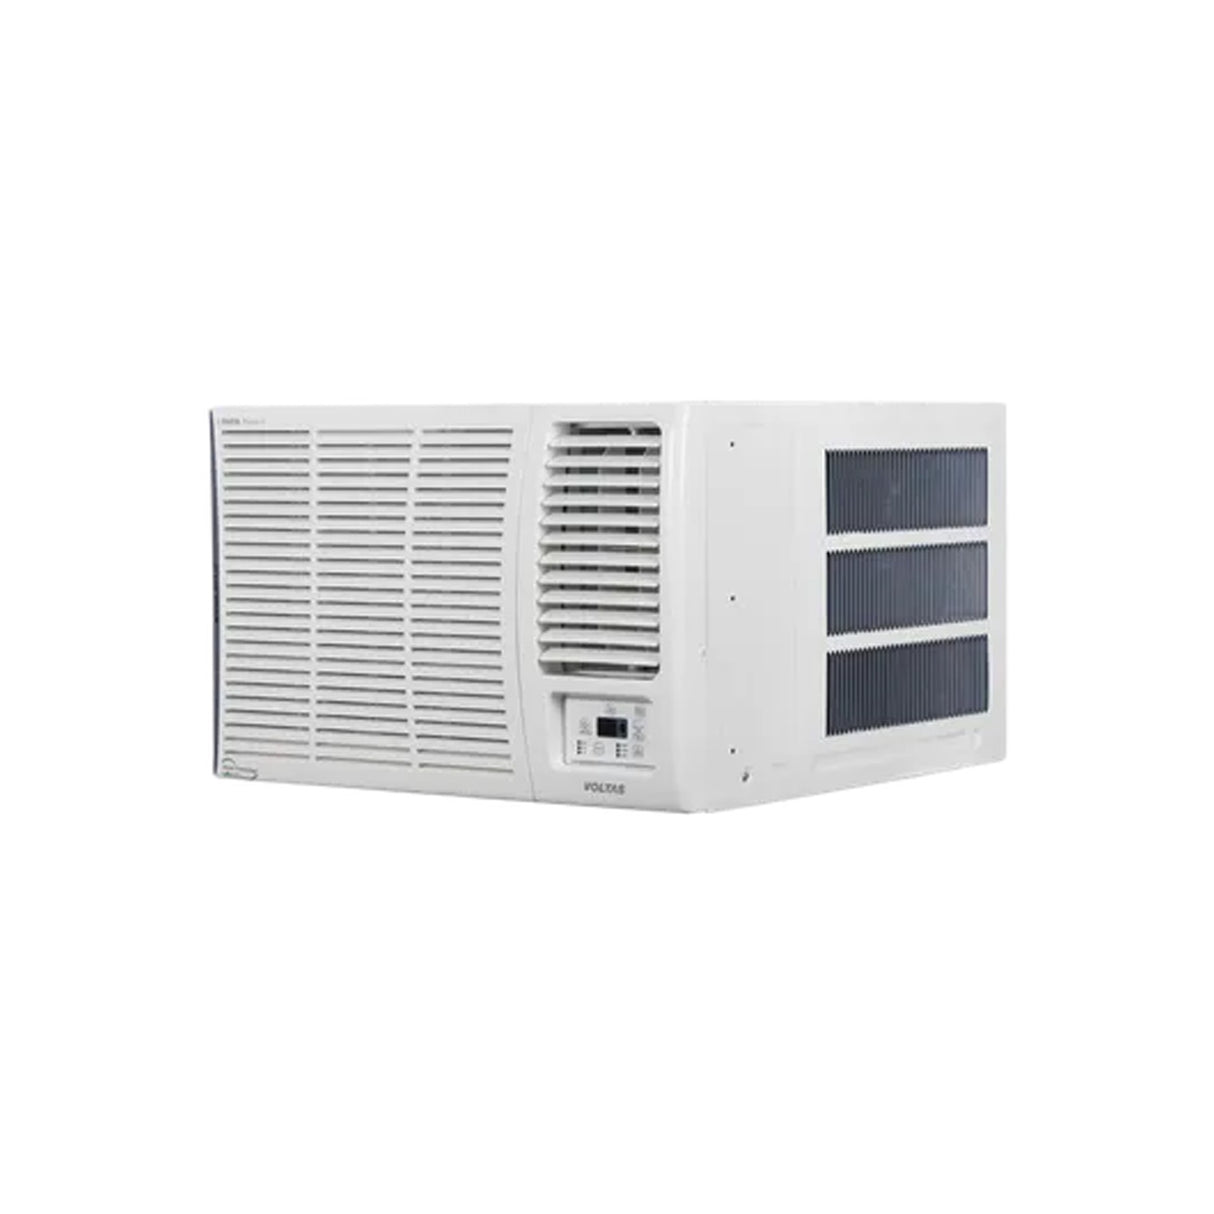 Best Air Conditioner: VOLTAS 1.5 Ton 5 Star Window AC, Copper Condenser